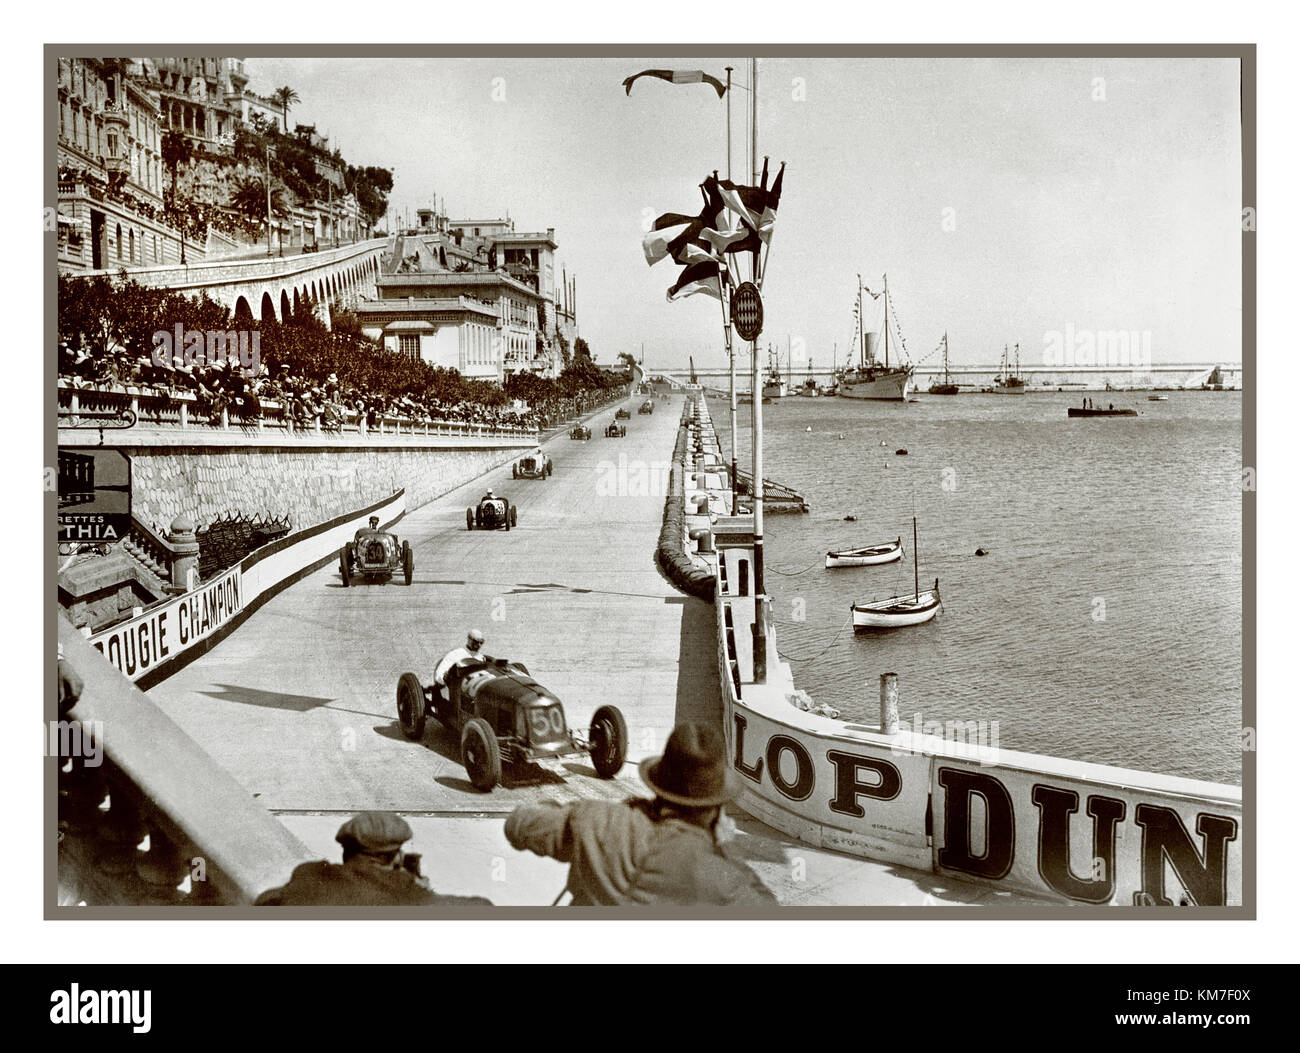 VINTAGE 1931 GRAN PREMIO DI MONACO MOTOR RACING (Formula 1) il Gran Premio di Monaco 1931 è stato una gara di Gran Premio che si è svolta sul circuito di Monaco il 19 aprile 1931 numero 50 a capo di questa gara è la Maserati 8C 2500 guidata da Rene Dreyfus, Bugatti. Louis Chiron venne per primo in un Bugatti Foto Stock